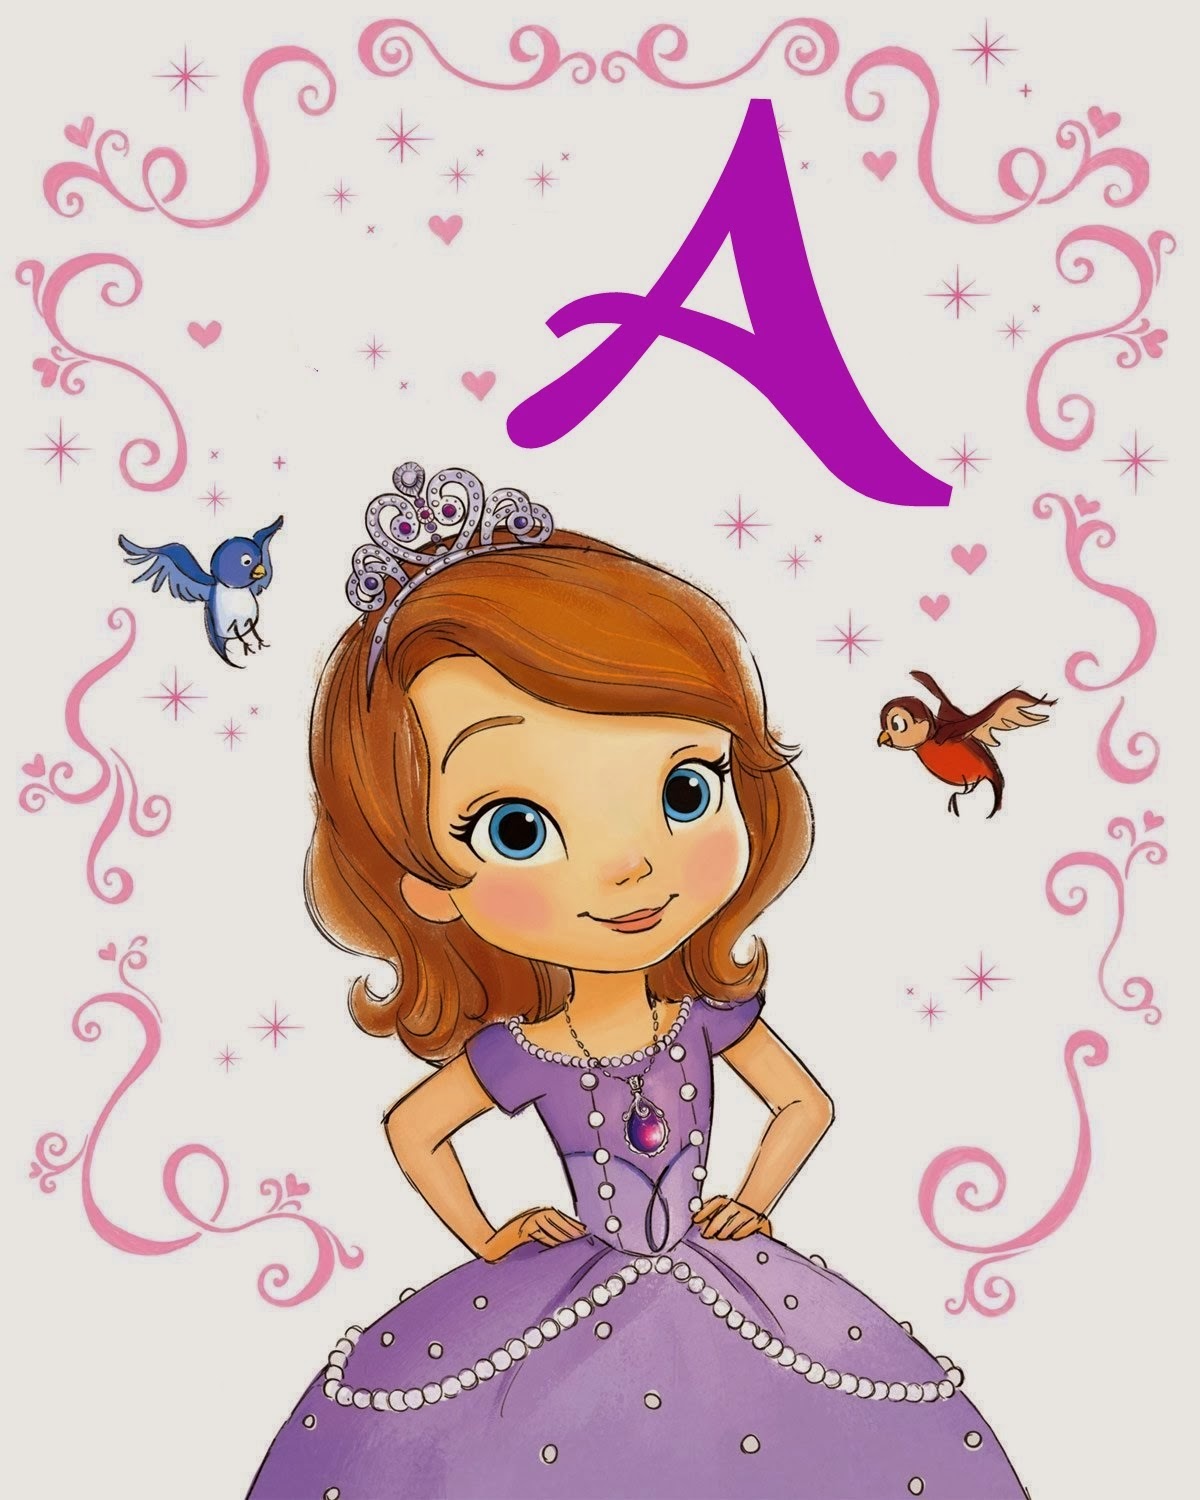 Um personagem de desenho animado do jogo princesa sofia